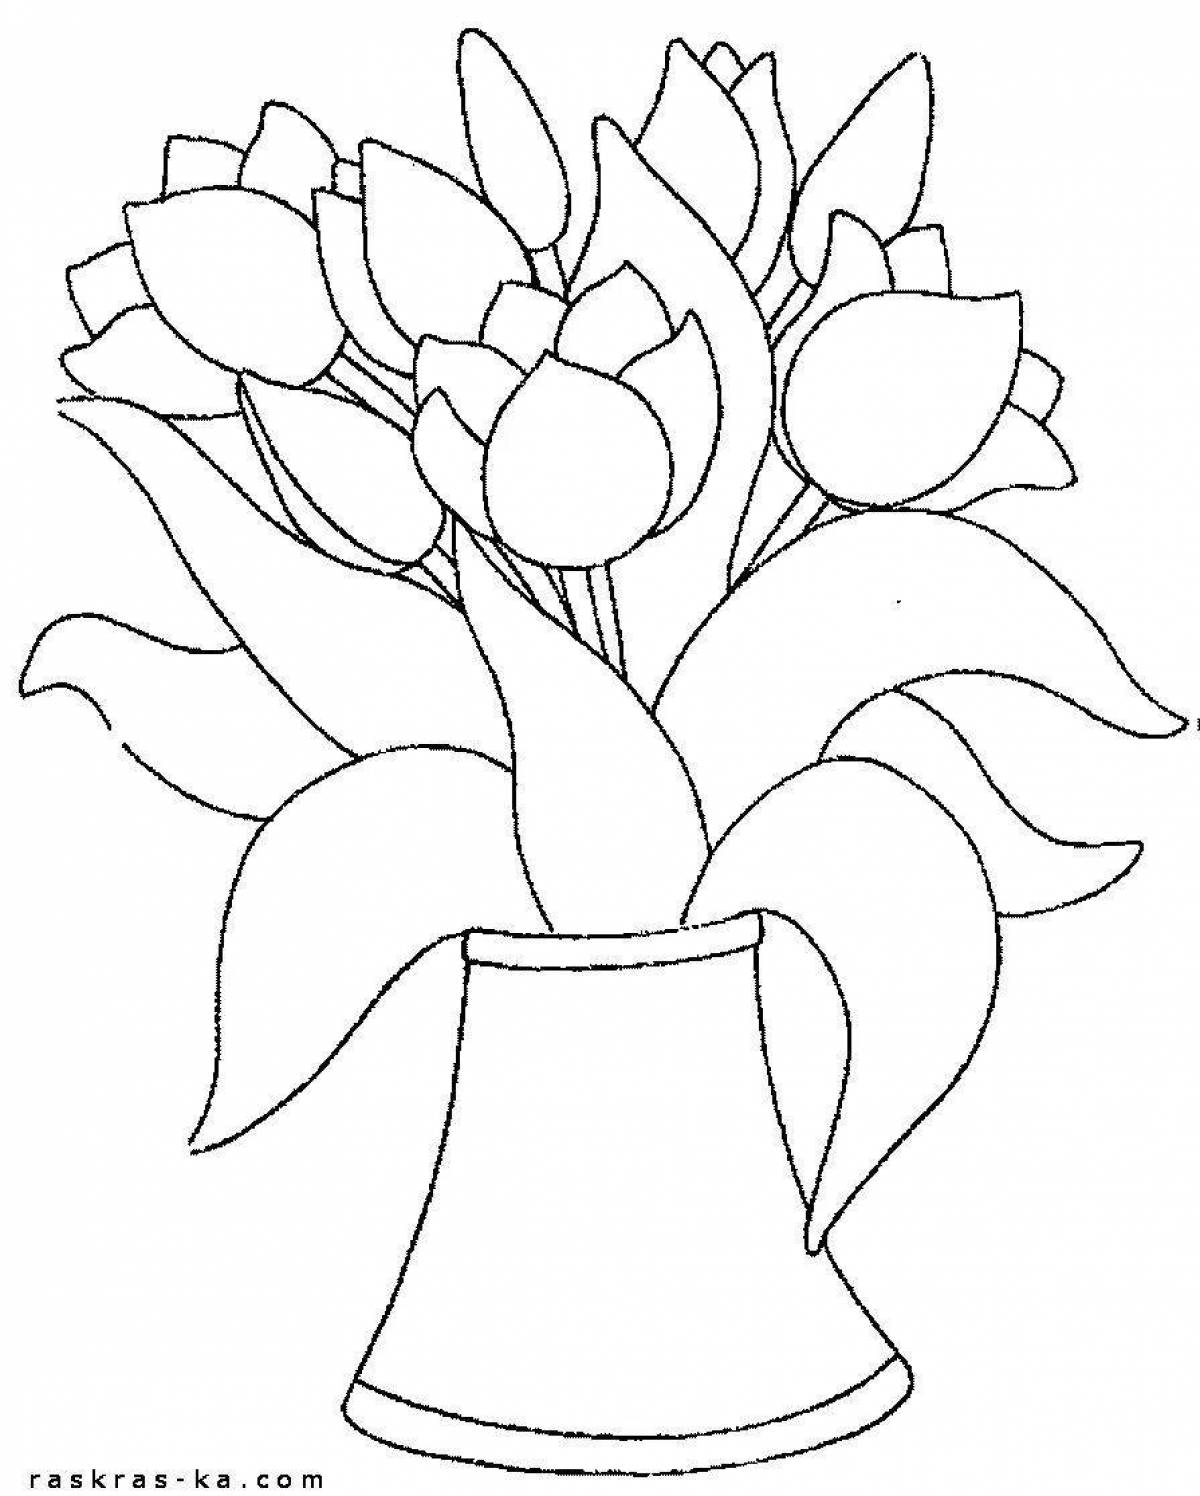 Раскраска ваза с цветами для детей 5-6 лет